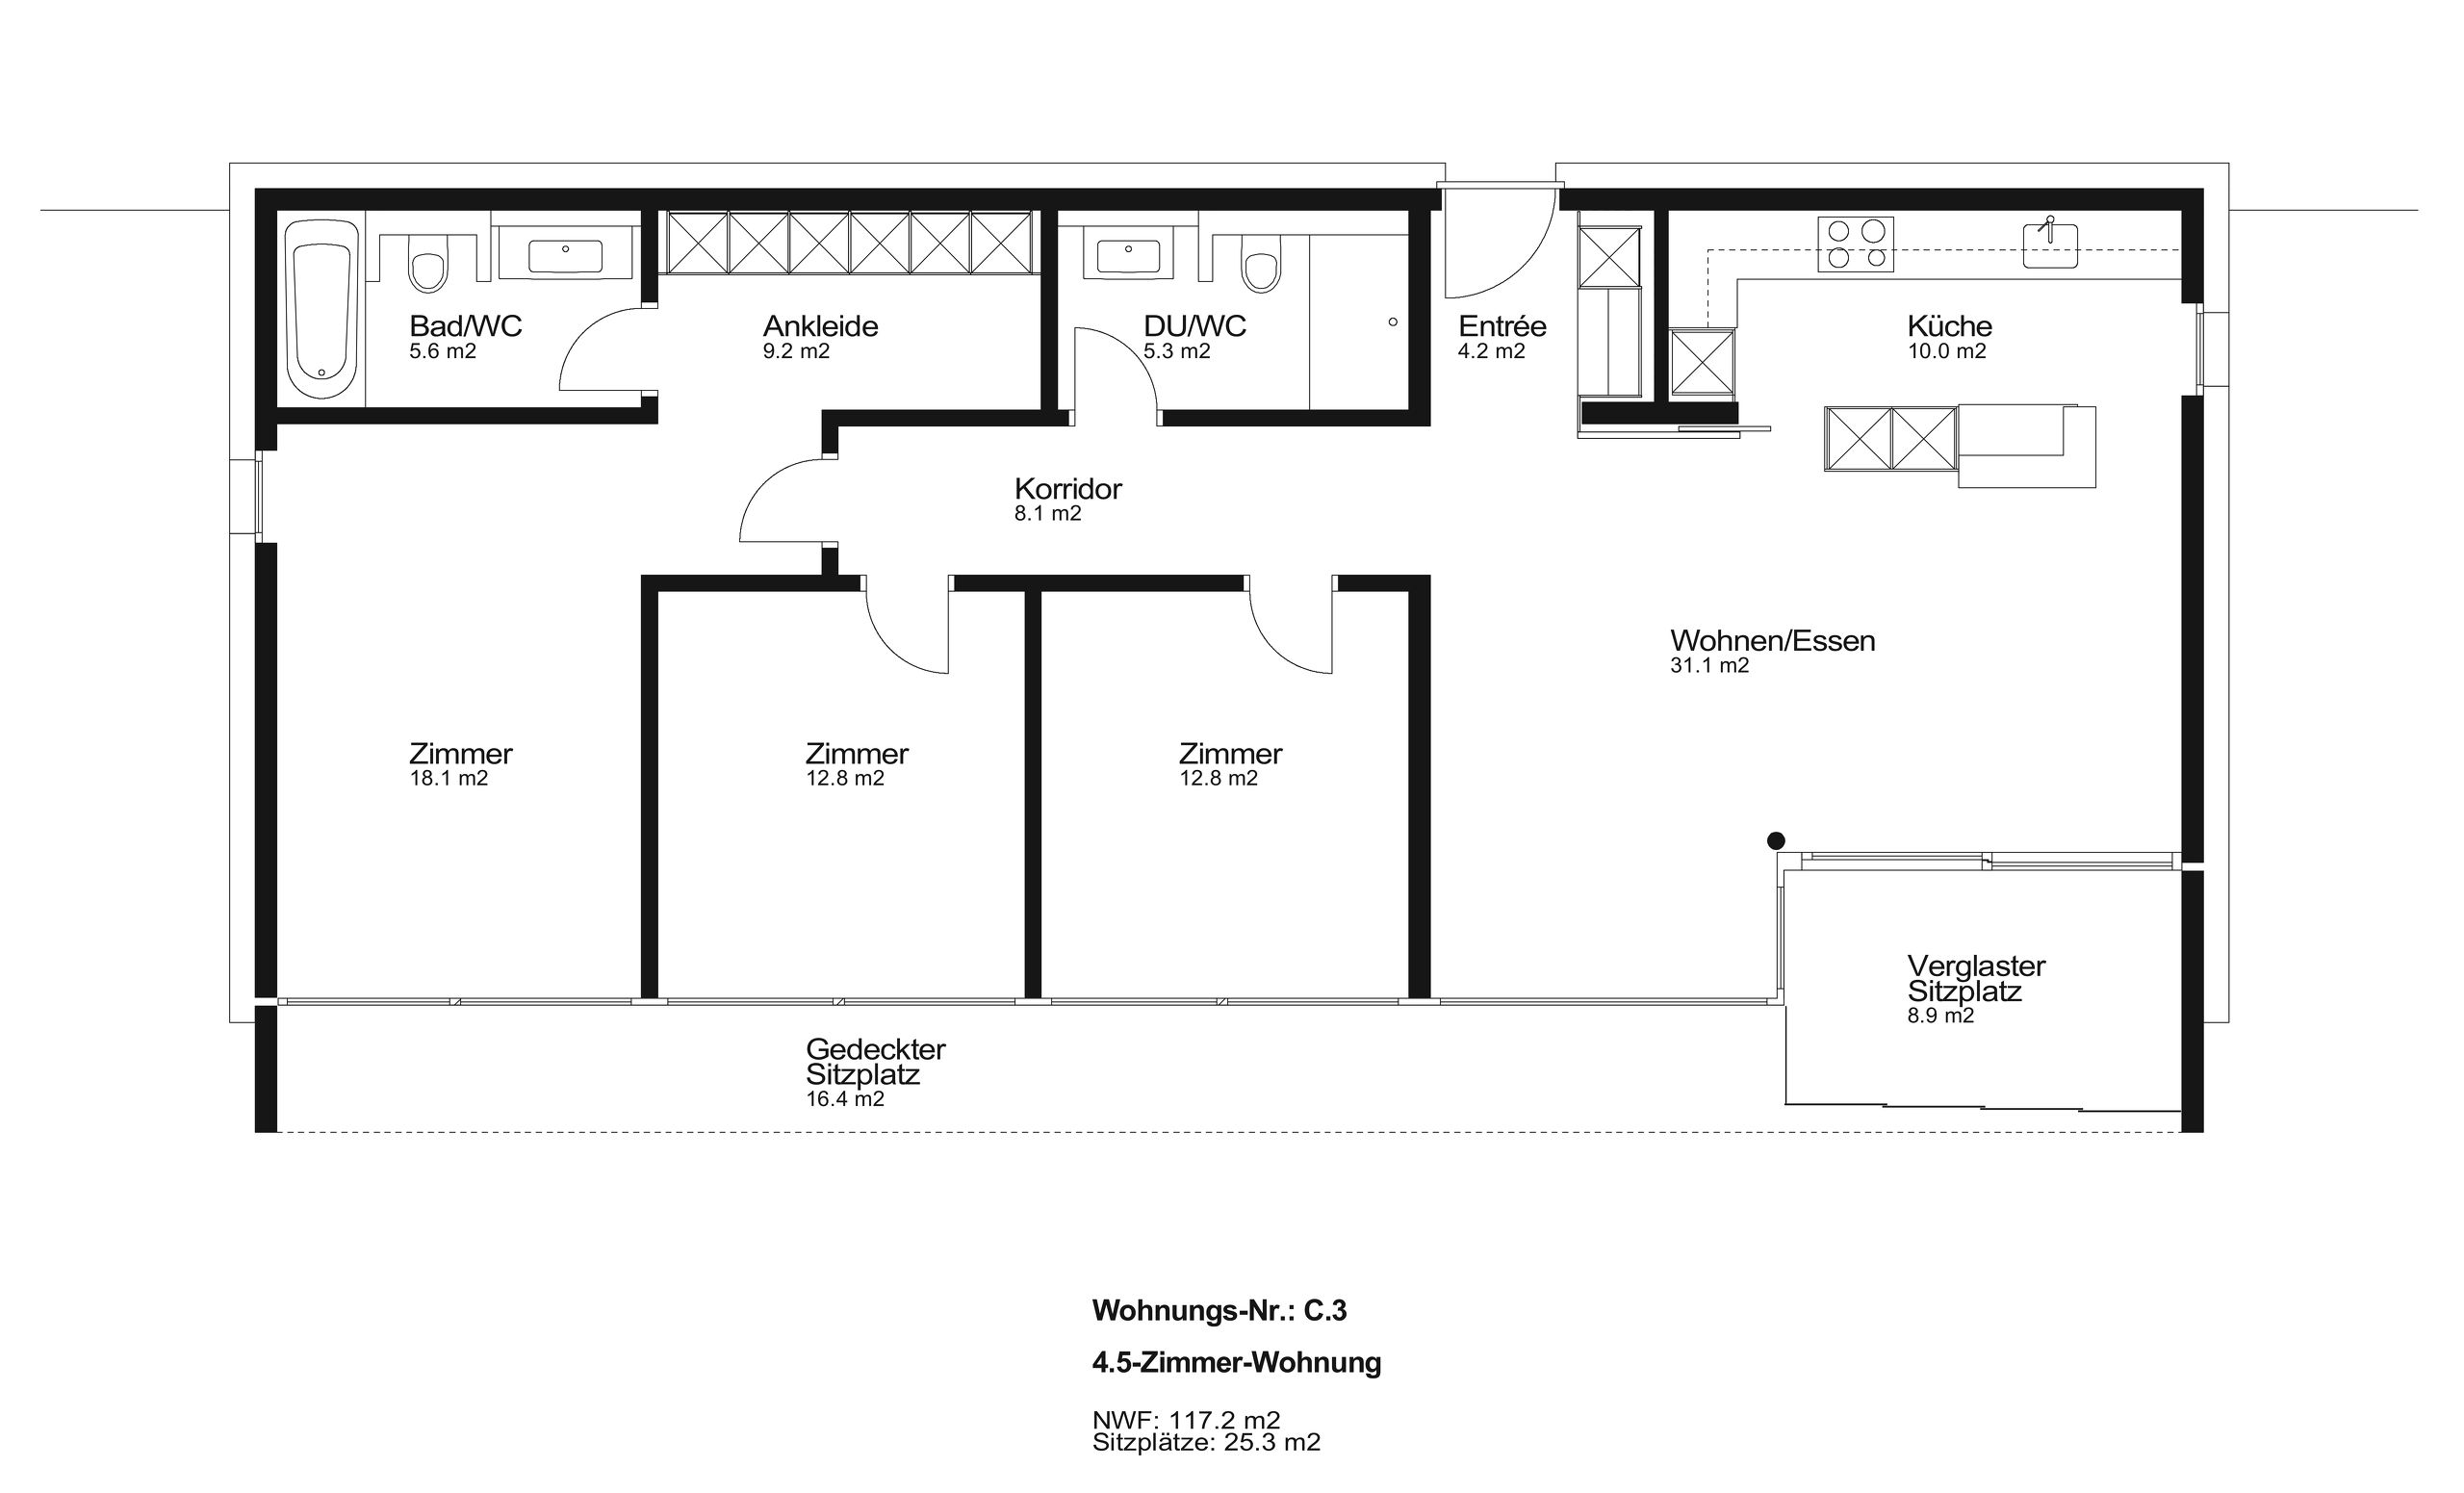 Grundrissplan 4.5-Zimmer-Wohnung (C.3)